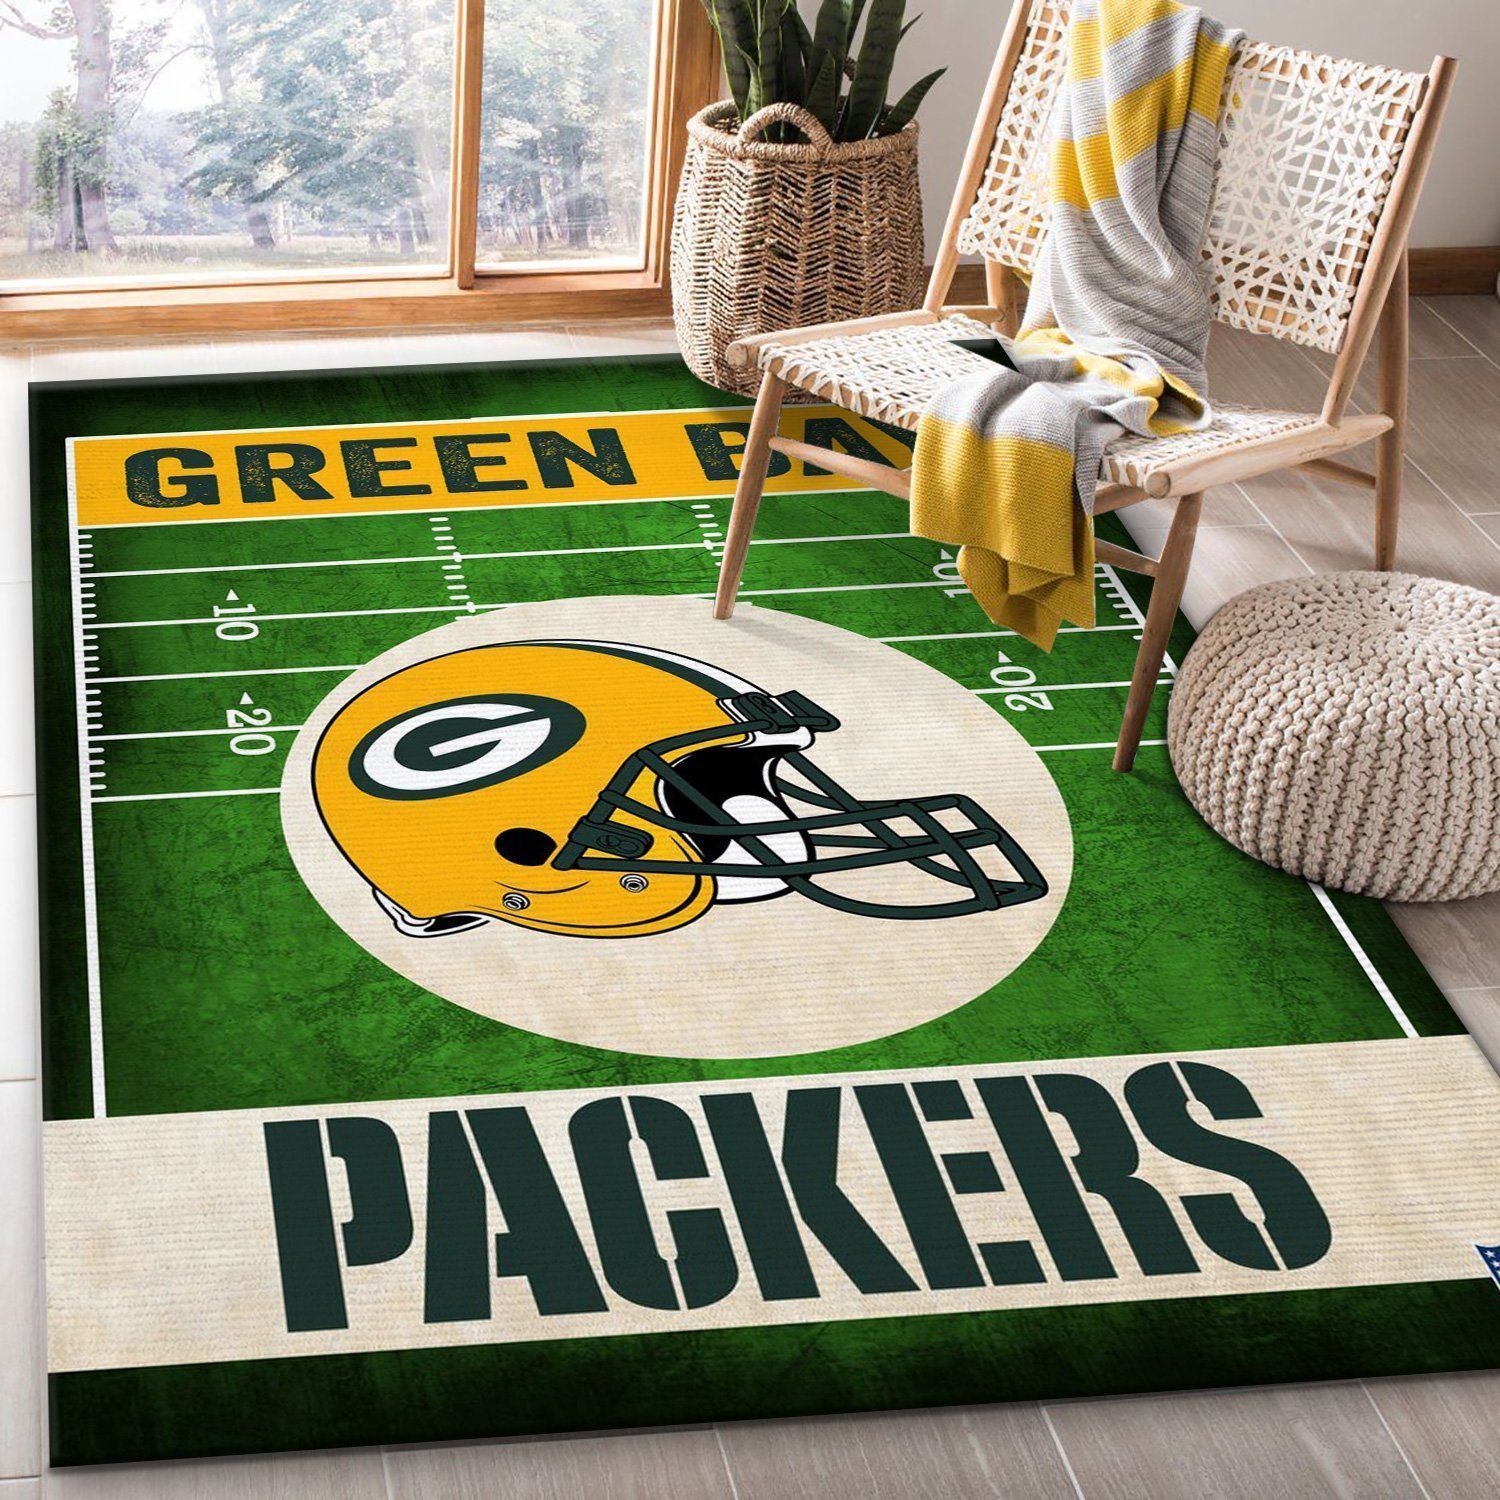 Green Bay Packers End Zone Nfl Rug Bedroom Rug Home Decor Floor Decor - Indoor Outdoor Rugs